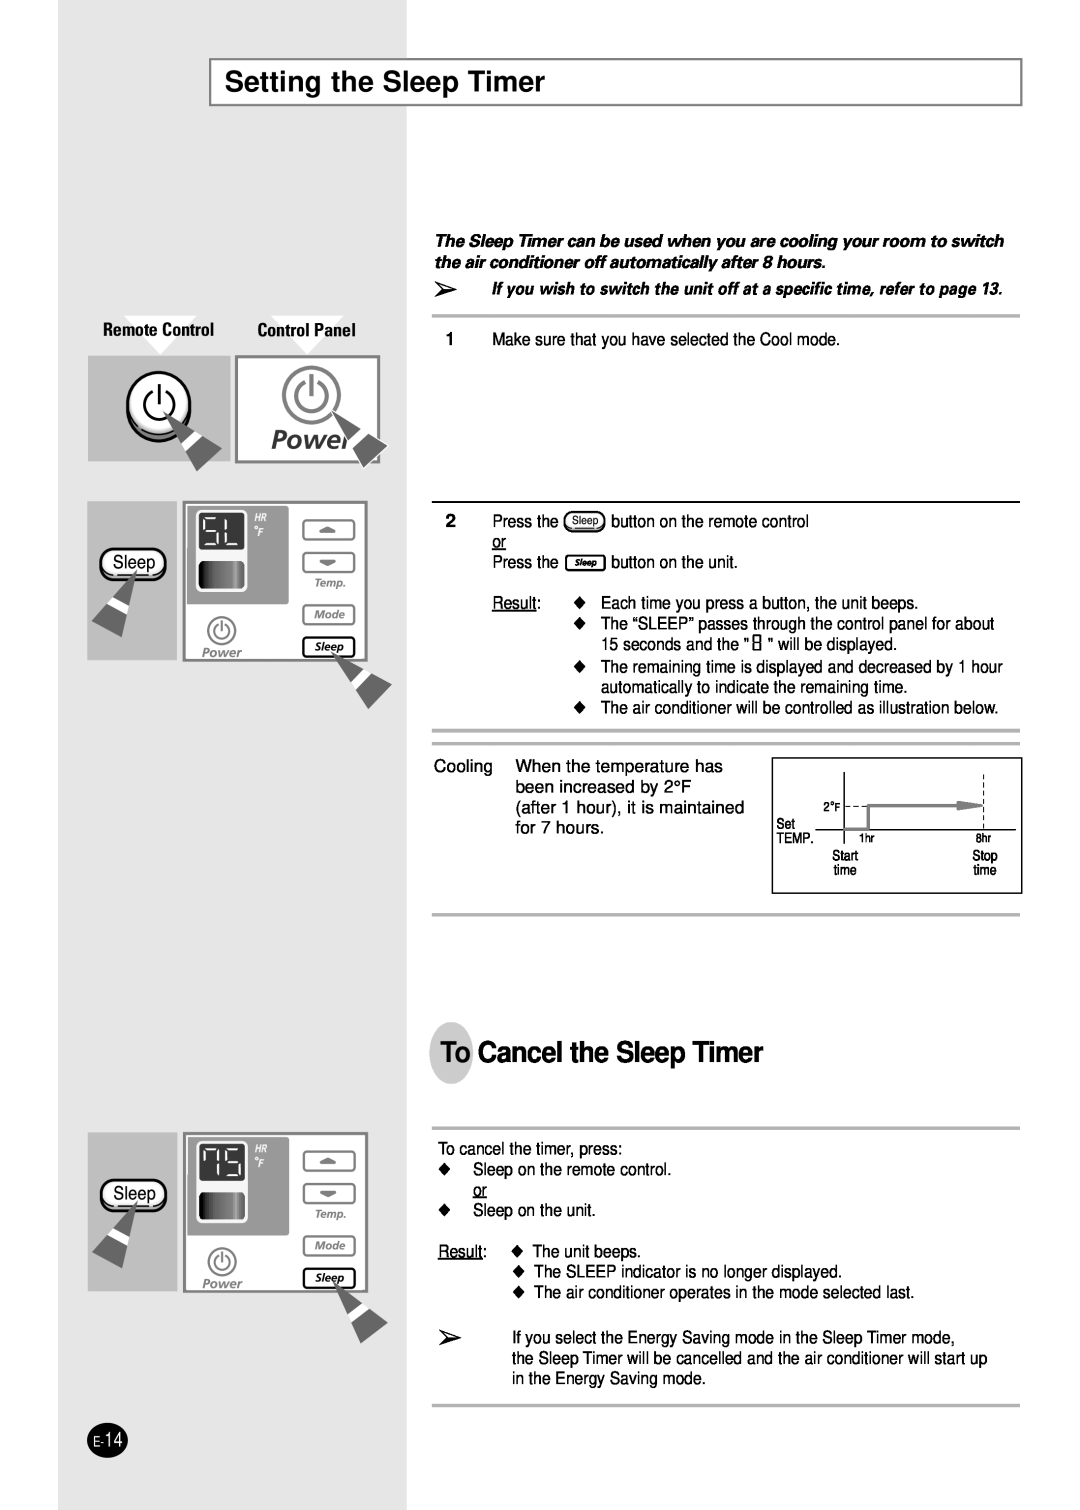 Samsung AW2400B manual Setting the Sleep Timer, To Cancel the Sleep Timer, Remote Control, Control Panel 